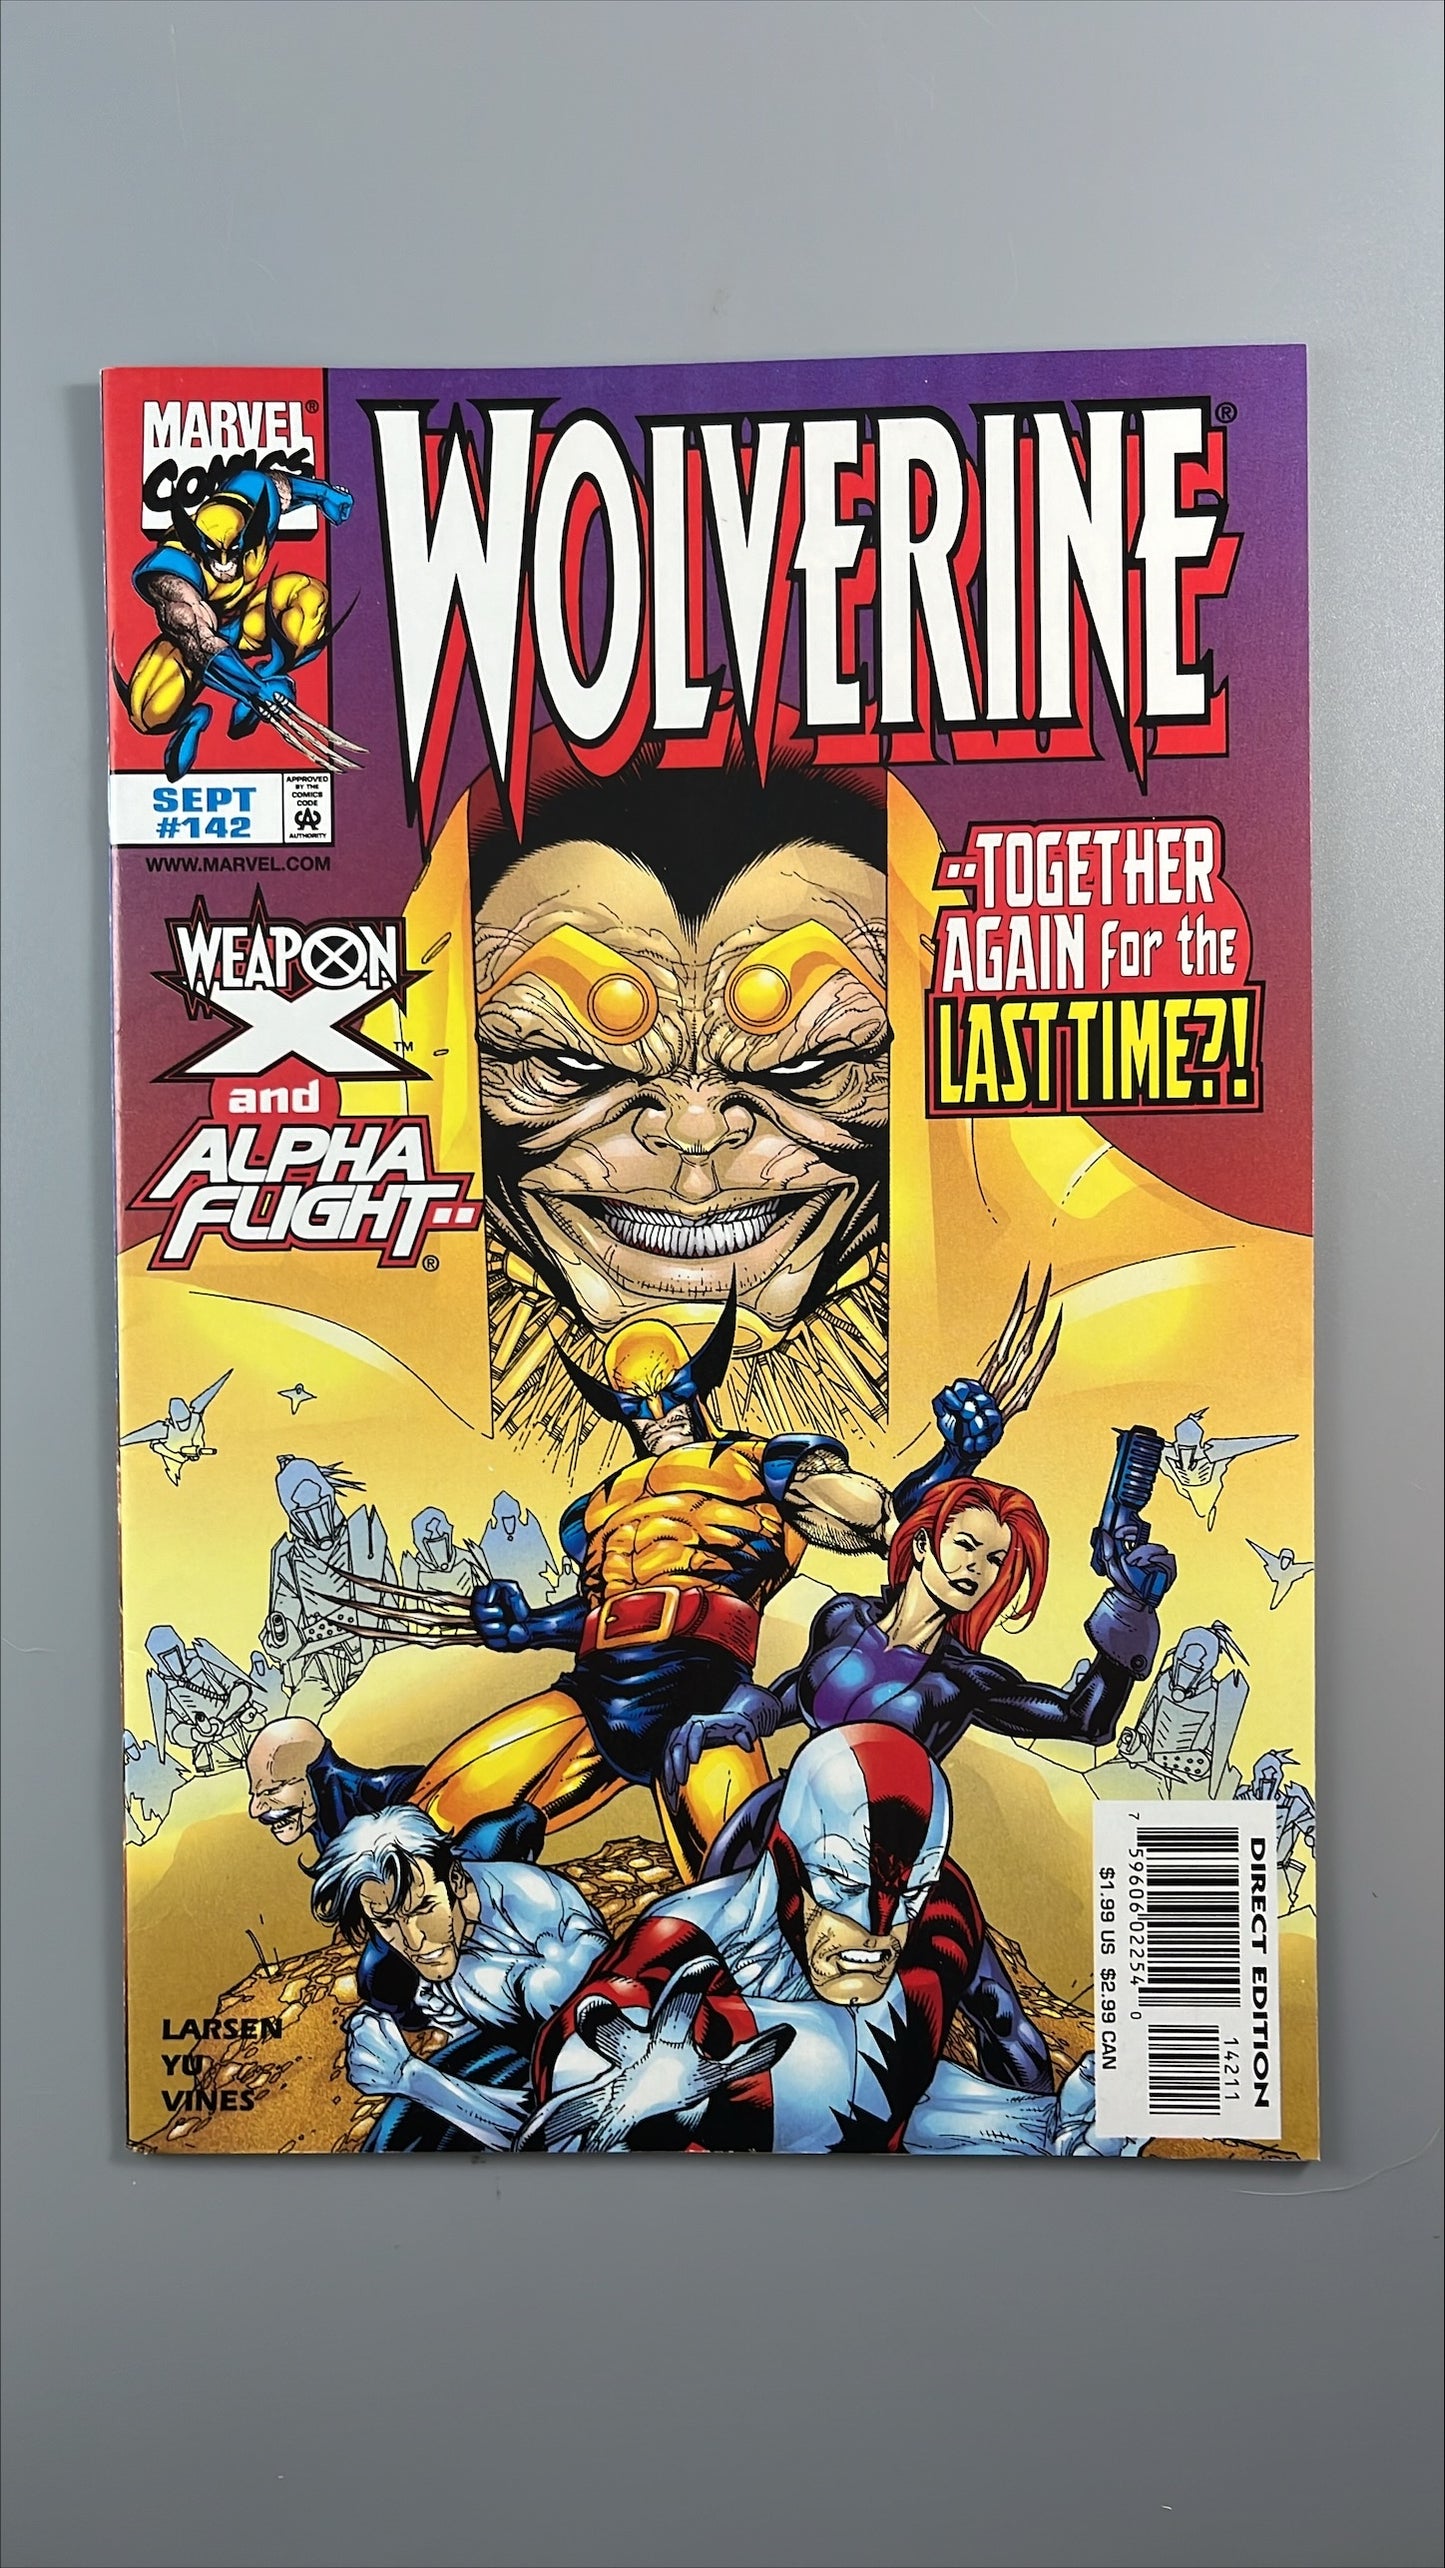 Wolverine #142